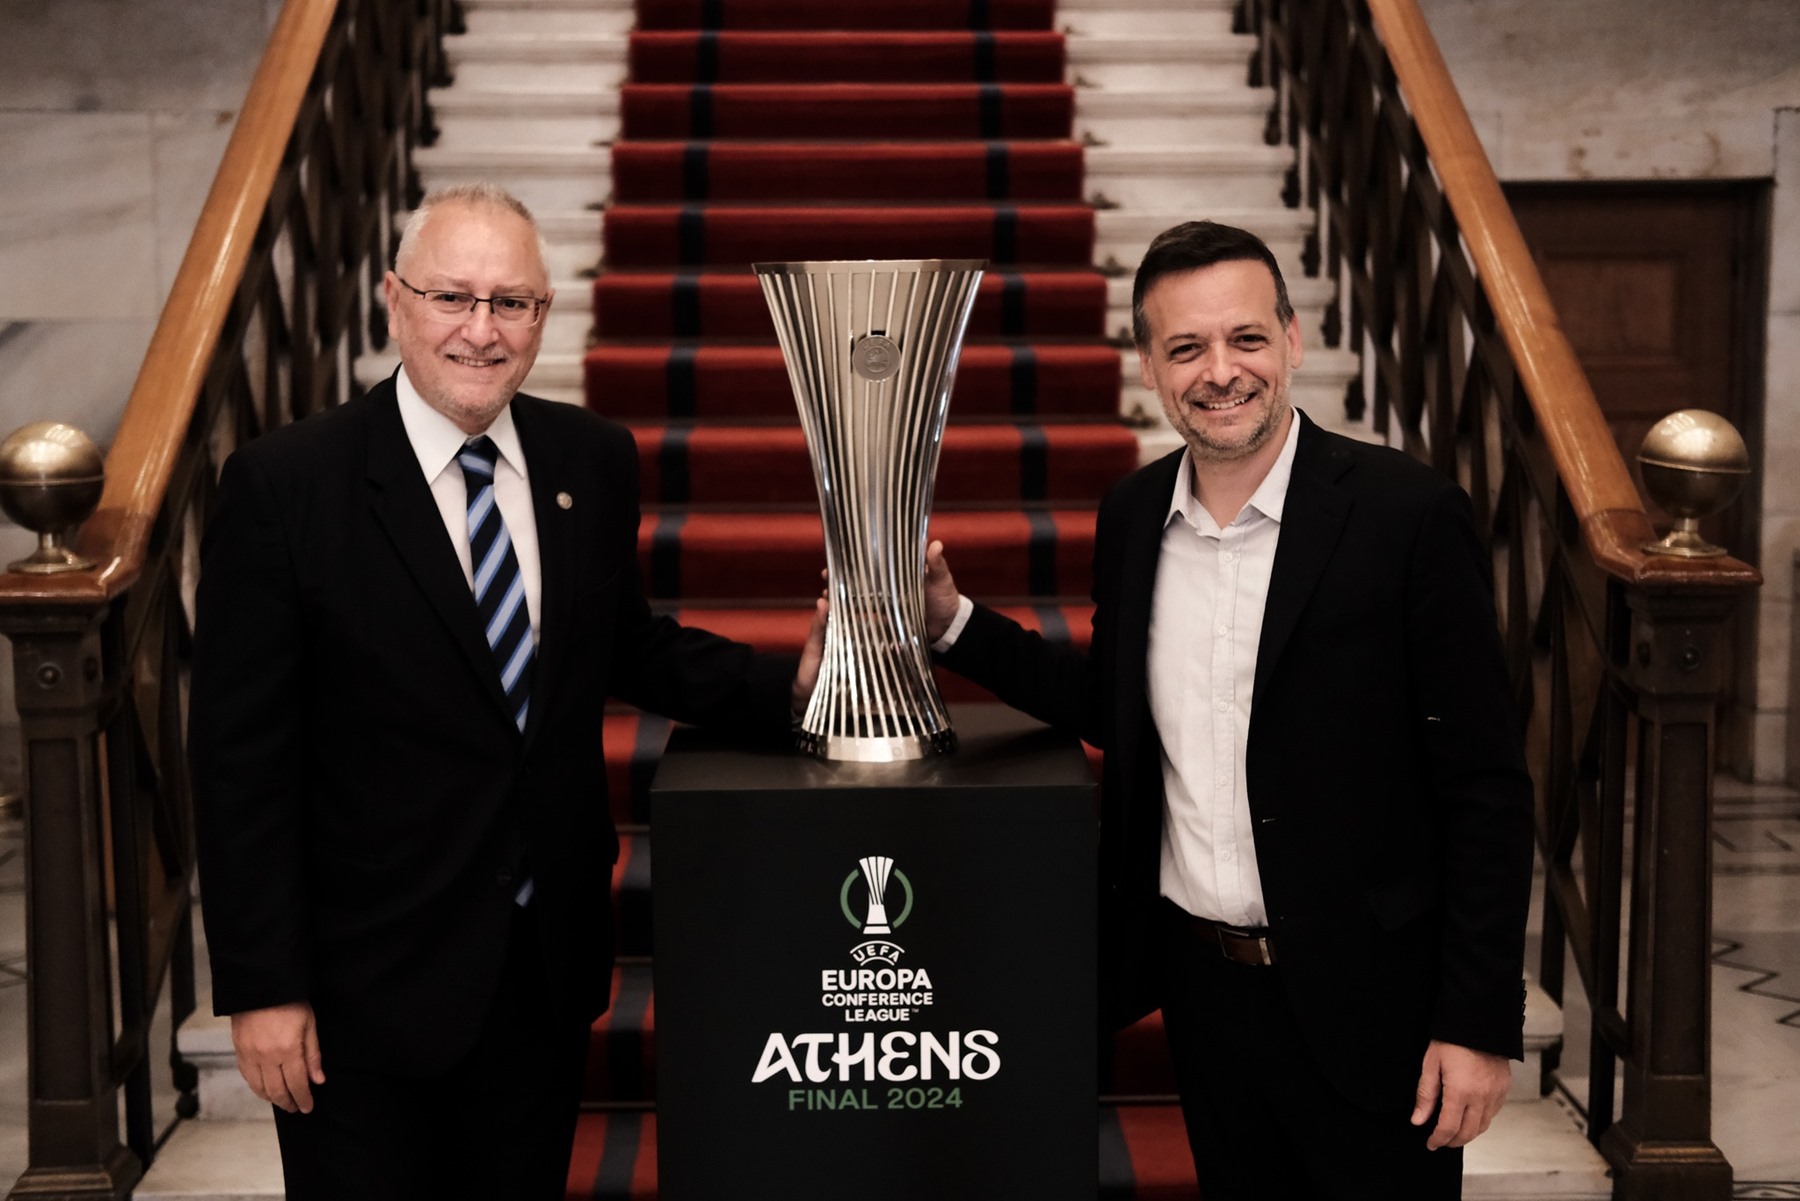 Κύπελλο UEFA Europa Conference League Χάρης Δούκας: Είμαστε πολύ χαρούμενοι διότι βρίσκεται εδώ